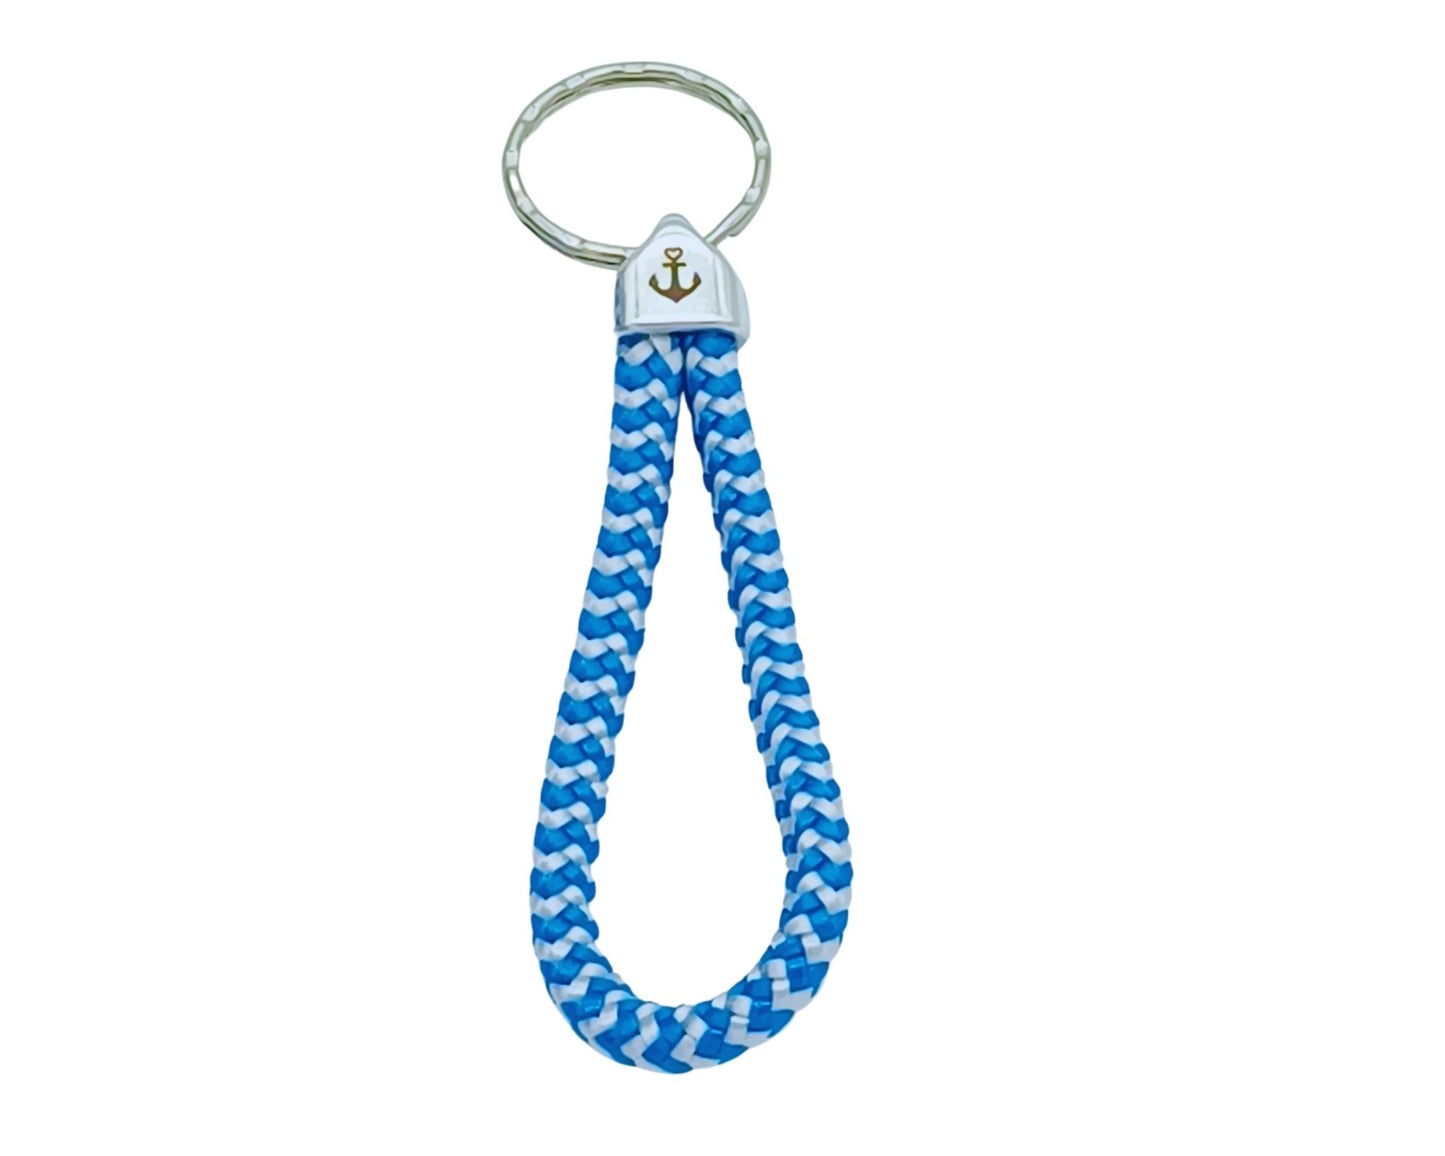 Segelseil Schlüsselanhänger 5mm Einfachschlaufe, blau weiß, Anker